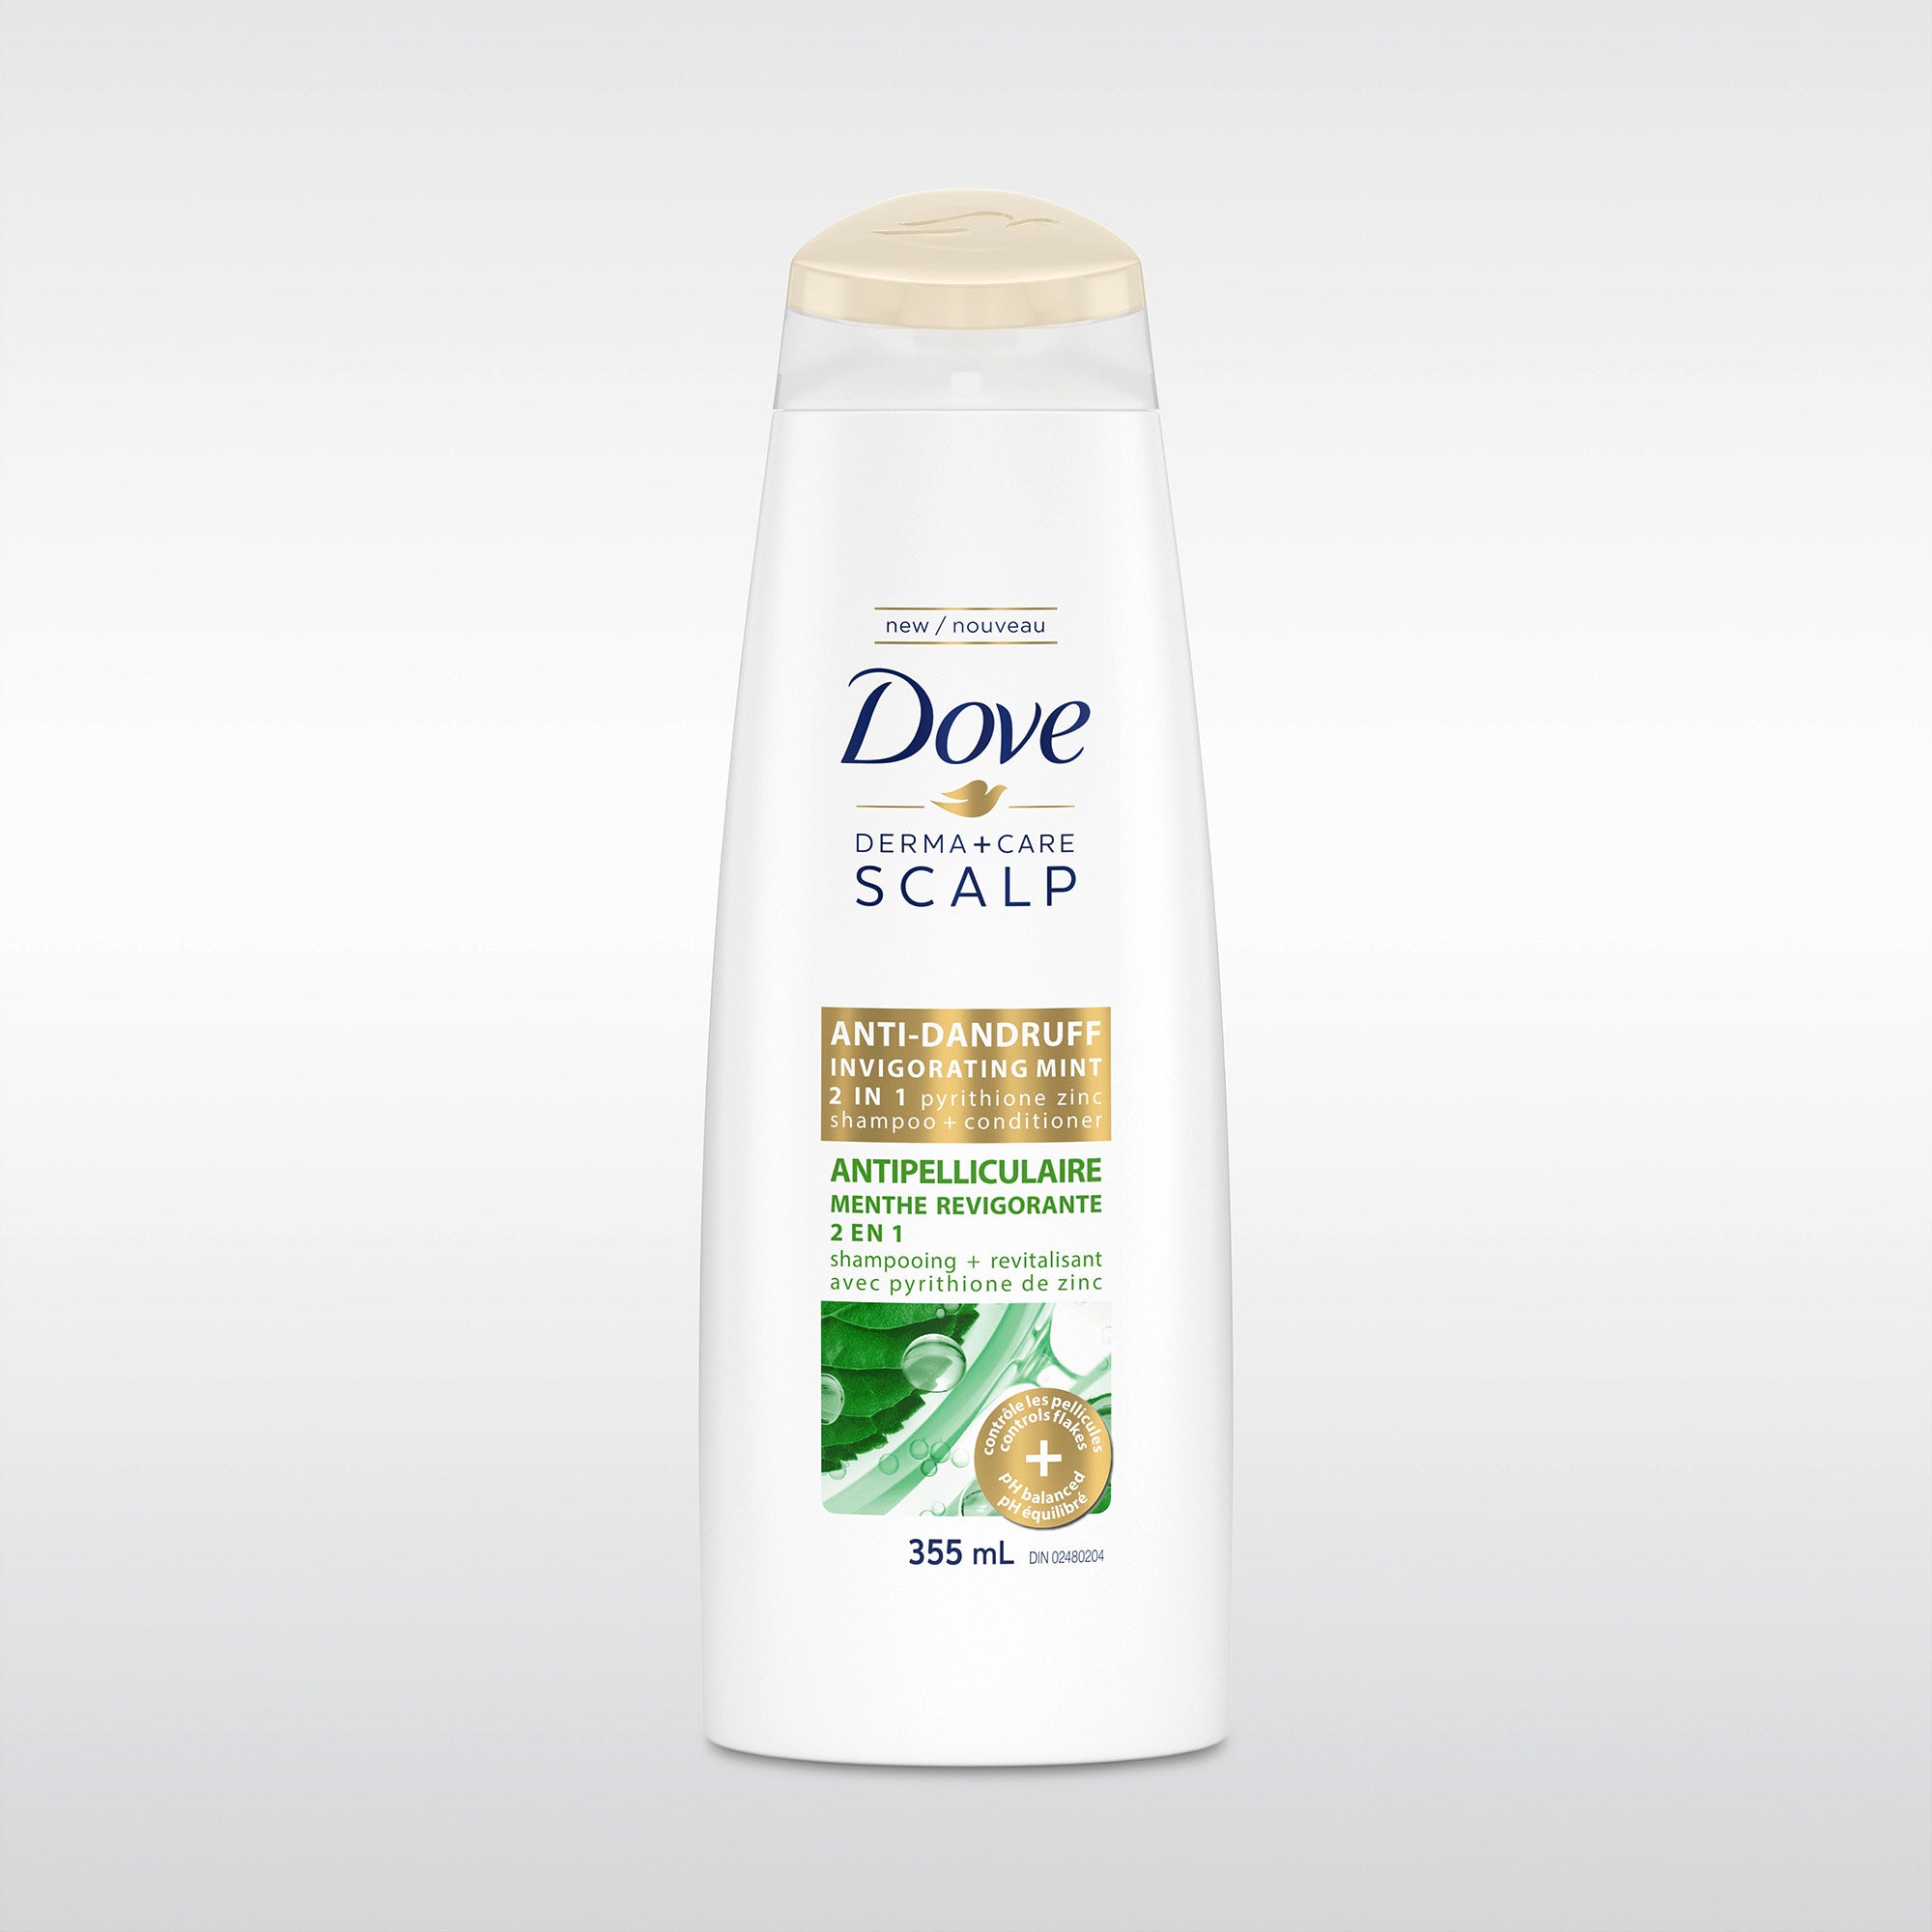 Dove Derma+Care Scalp 2 in 1 Shampoo + Conditioner